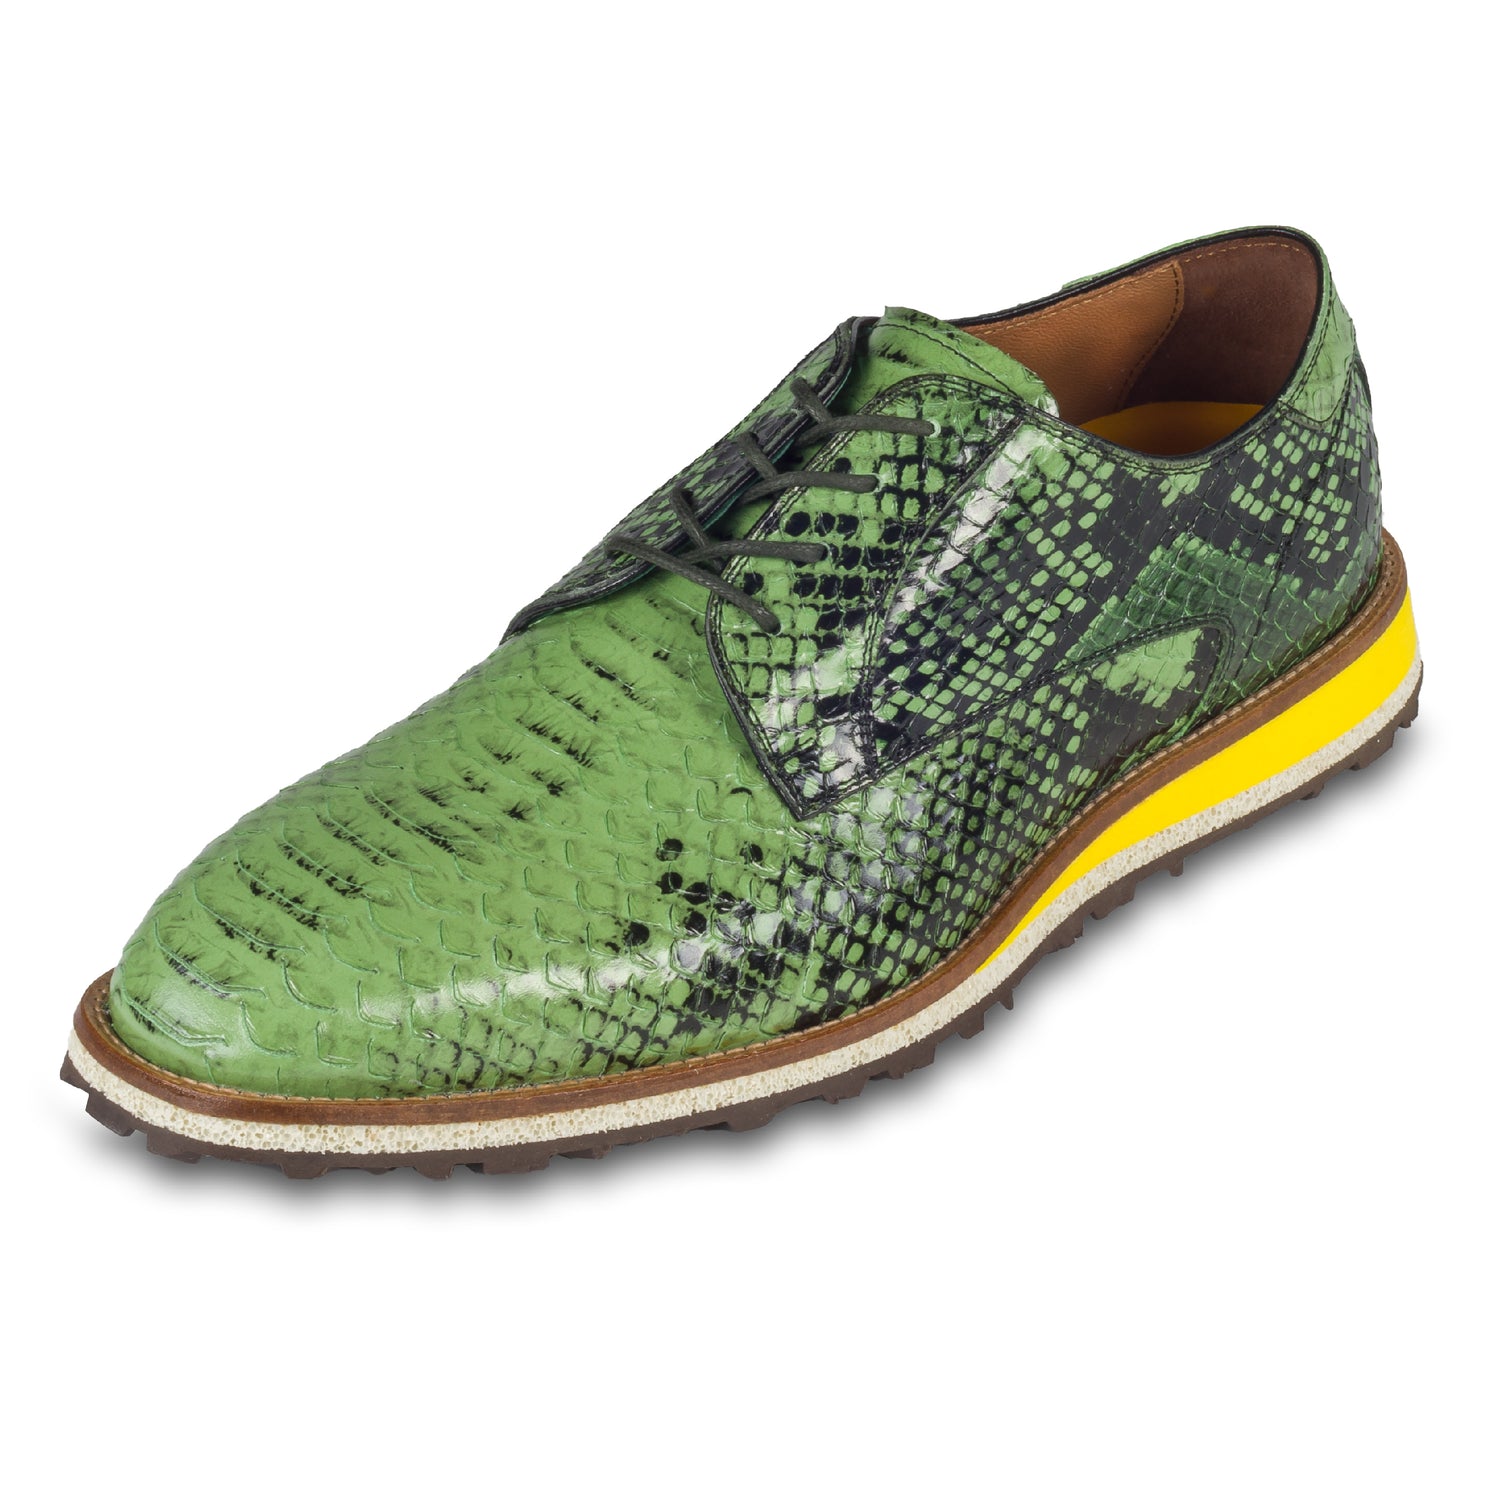 Lorenzi Herren Leder Schnür-Halbschuh in grün / schwarzer Schlangen-Optik. Mit leichter Kreppsohle. Handgefertigt in Italien. Schräge Ansicht linker Schuh. Hier mit grünen Schnürsenkeln.